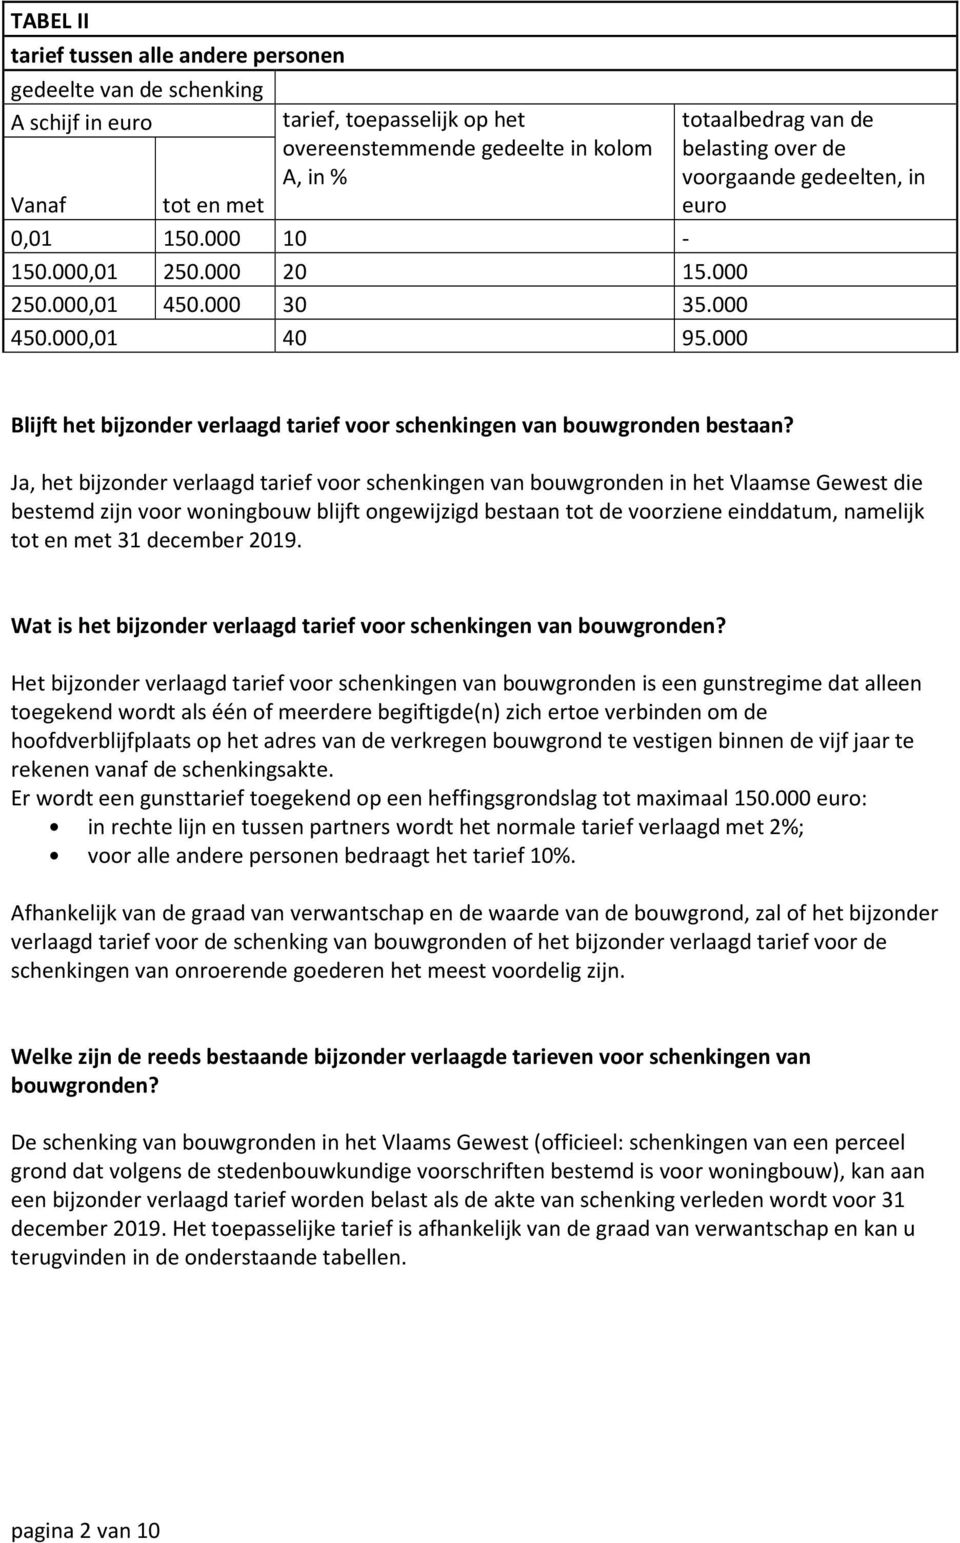 Ja, het bijzonder verlaagd tarief voor schenkingen van bouwgronden in het Vlaamse Gewest die bestemd zijn voor woningbouw blijft ongewijzigd bestaan tot de voorziene einddatum, namelijk tot en met 31